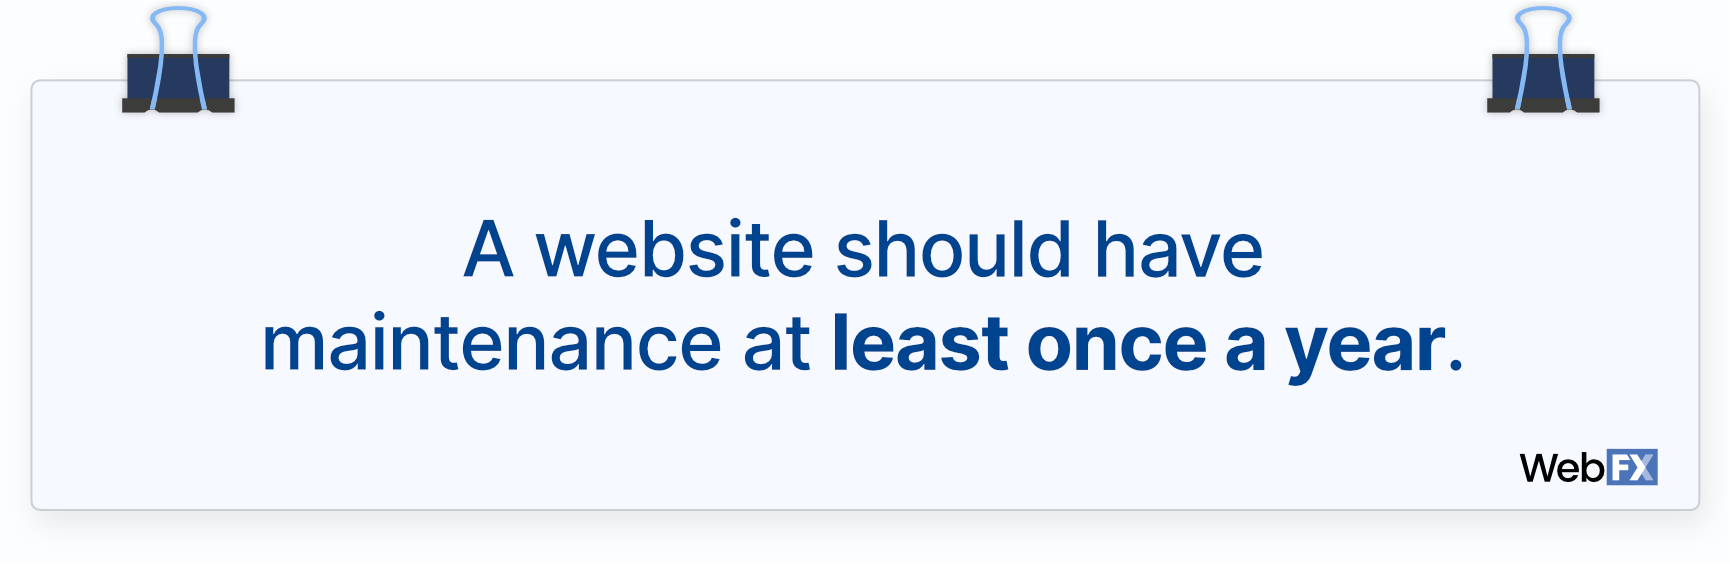 一个网站应该至少每年进行一次维护